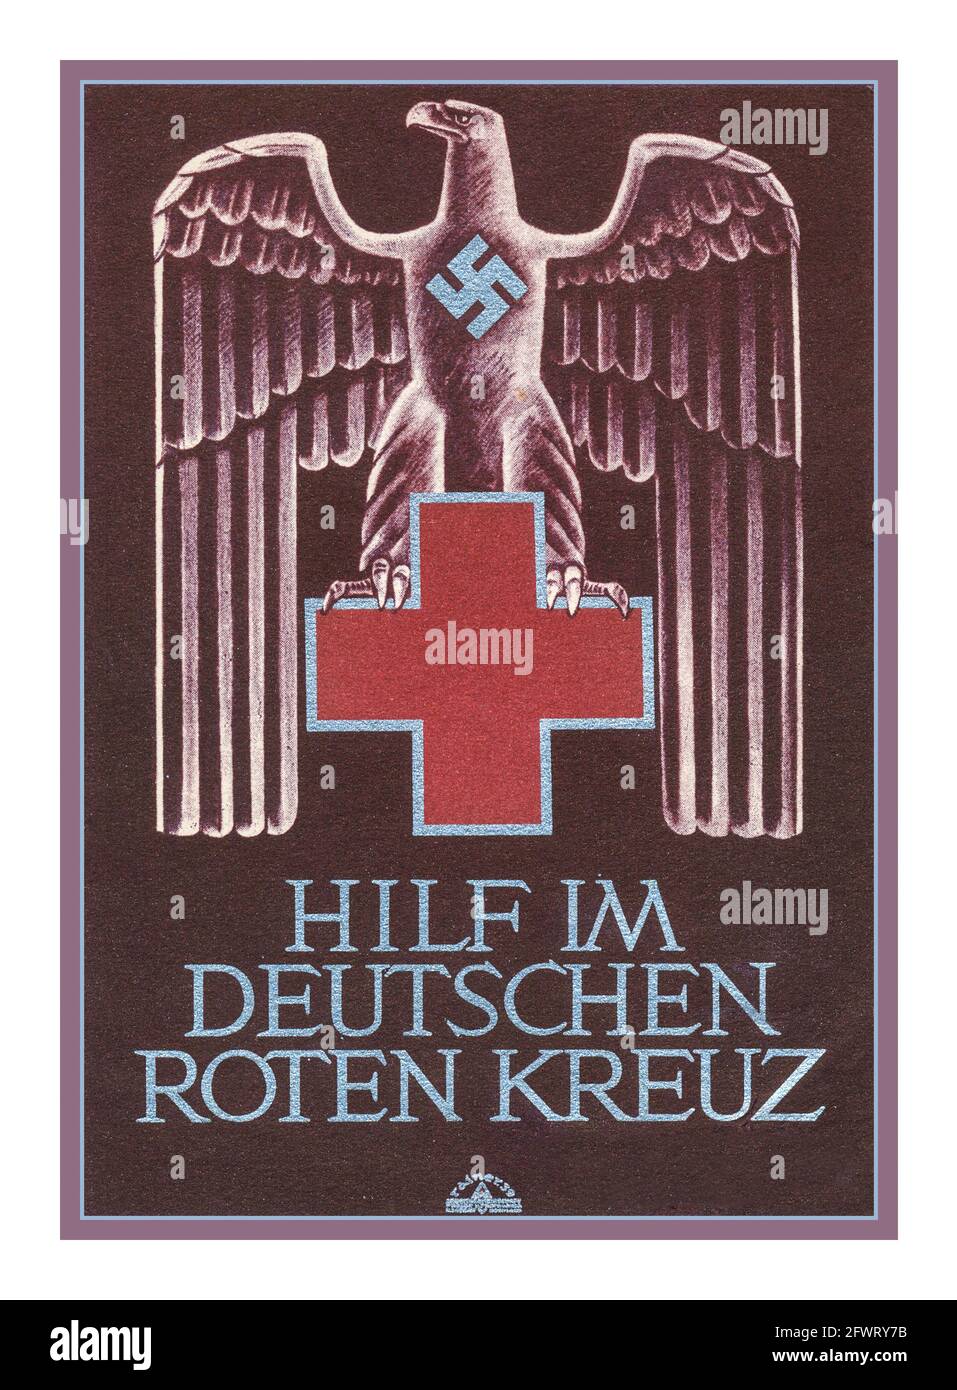 Carte de propagande de la Croix-Rouge nazie des années 1930 WW2 deuxième Guerre mondiale "aide dans la Croix-Rouge allemande" "hilf im deutschen roten kreuz" Illustration de l'aigle allemand avec Swastika et Croix-Rouge Banque D'Images